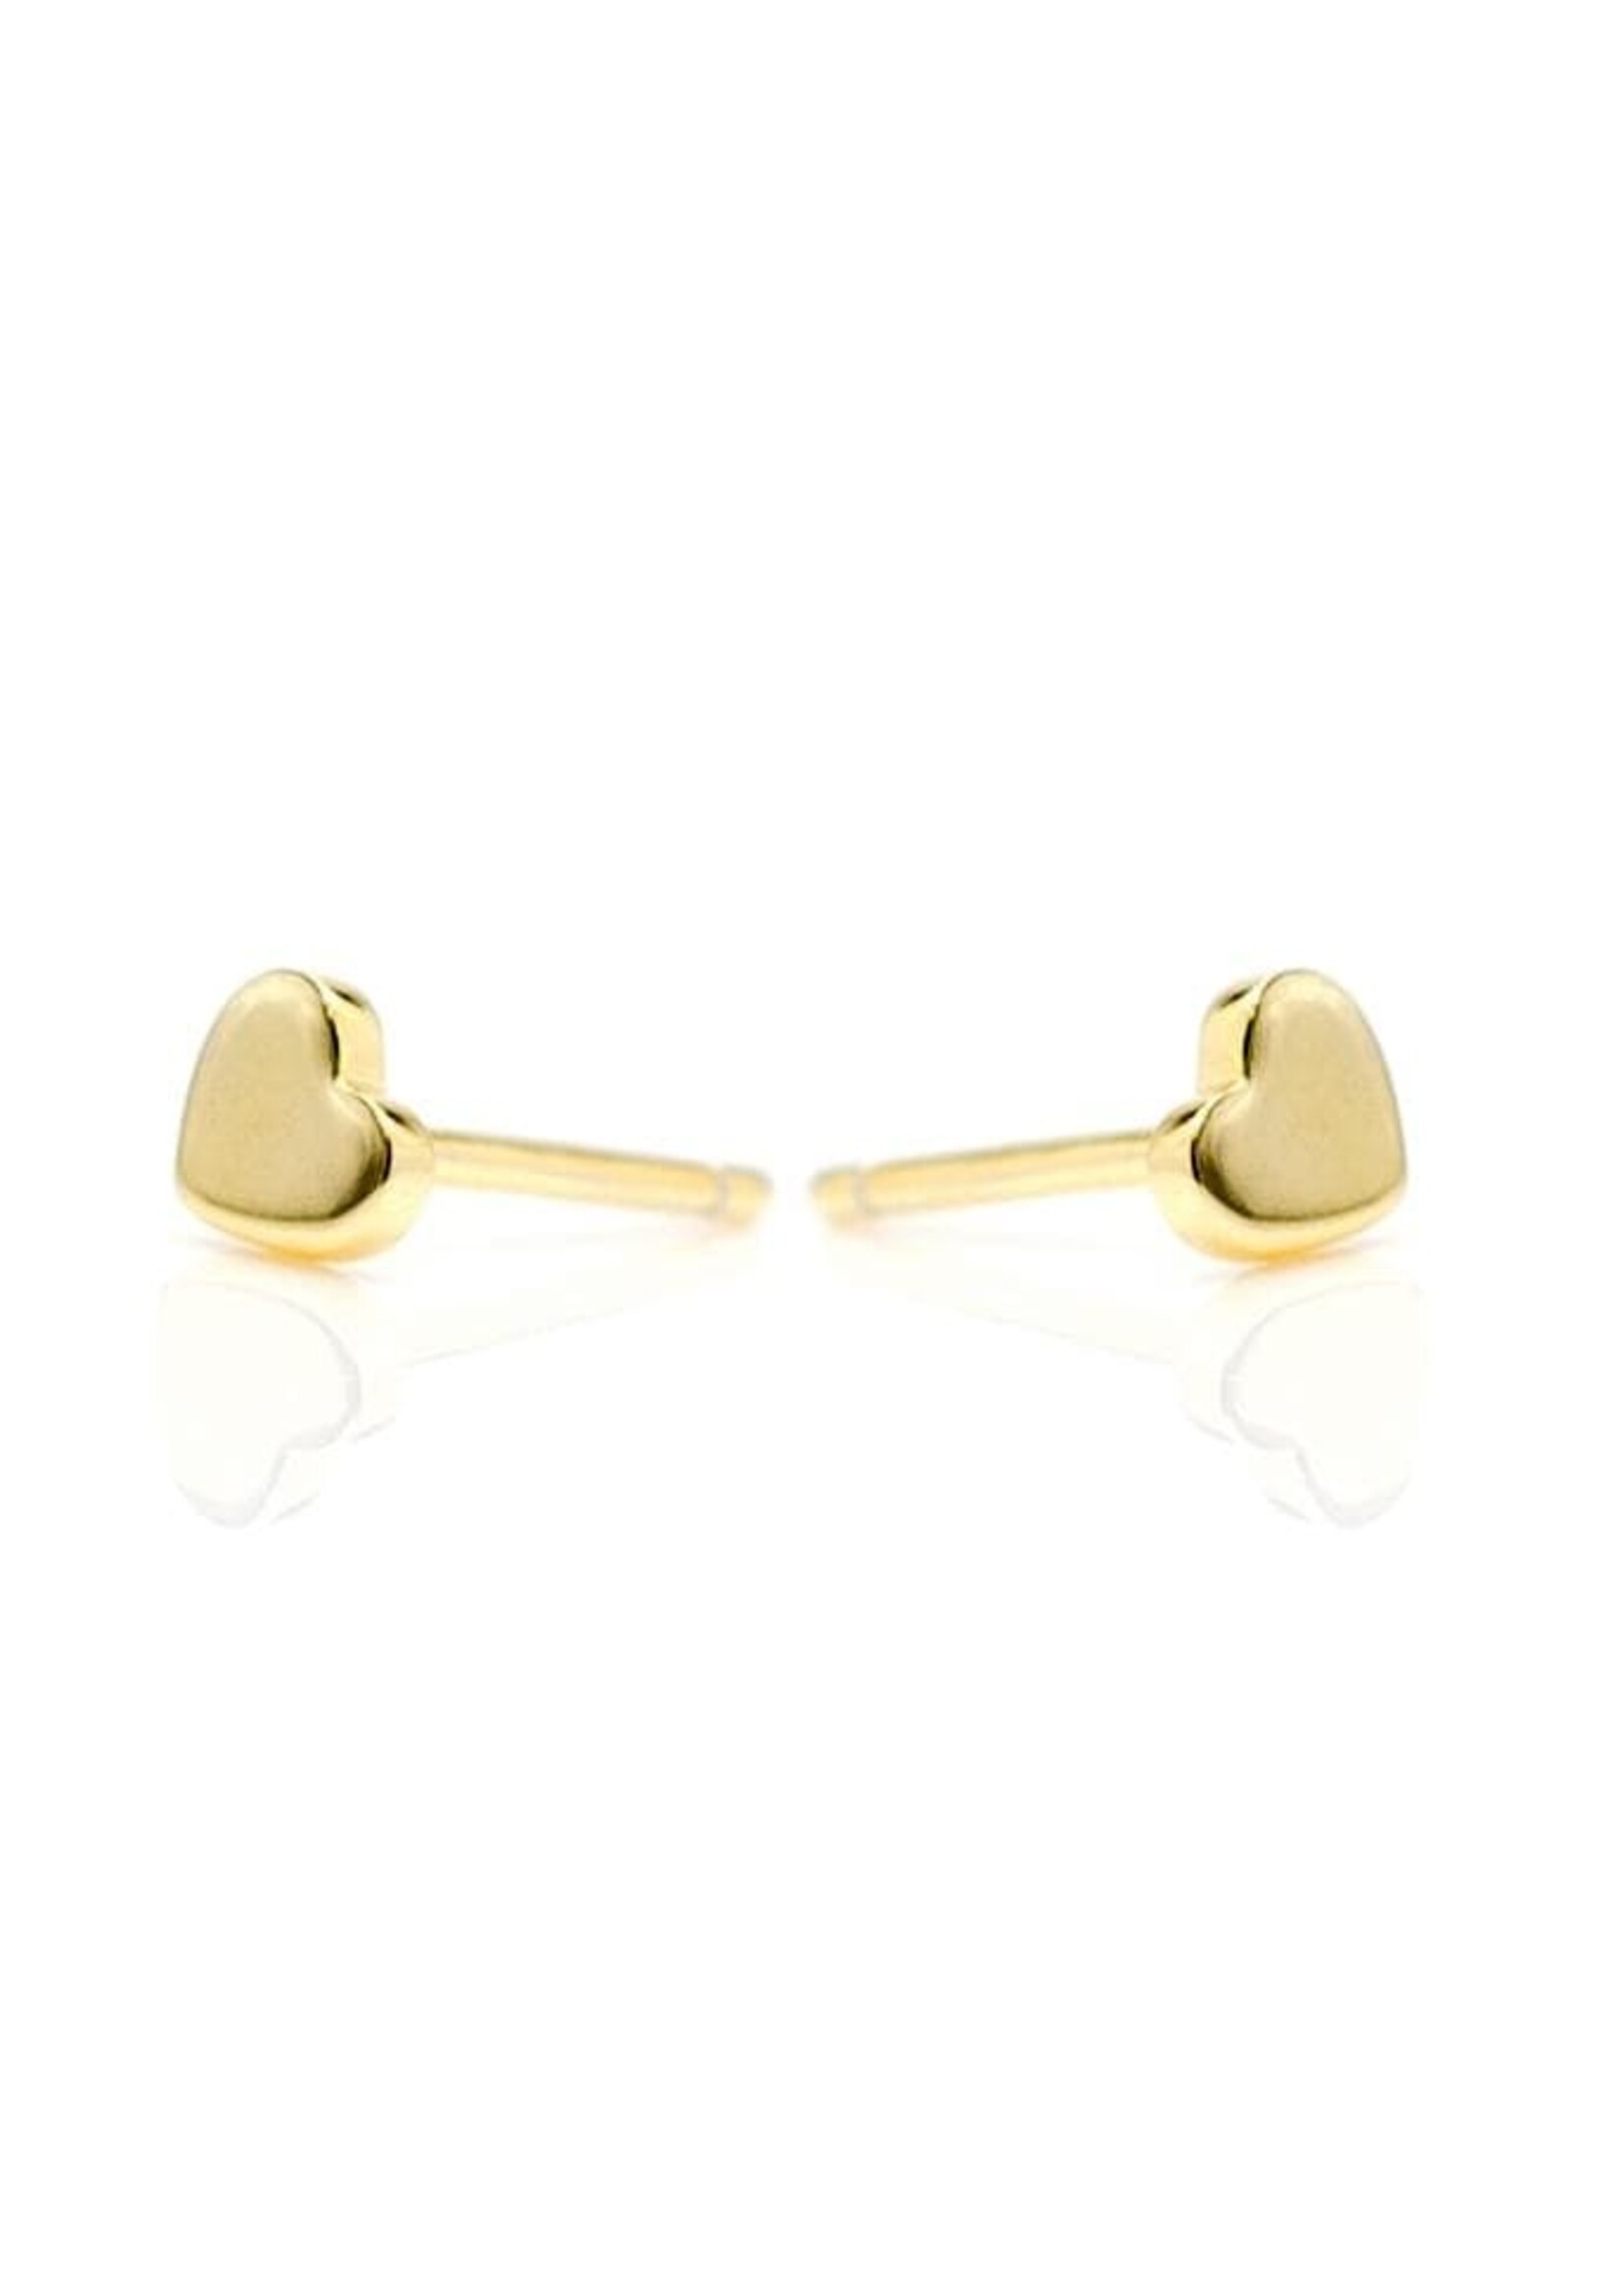 eLiasz and eLLa Jewelry Inc. Little Hearts Earrings